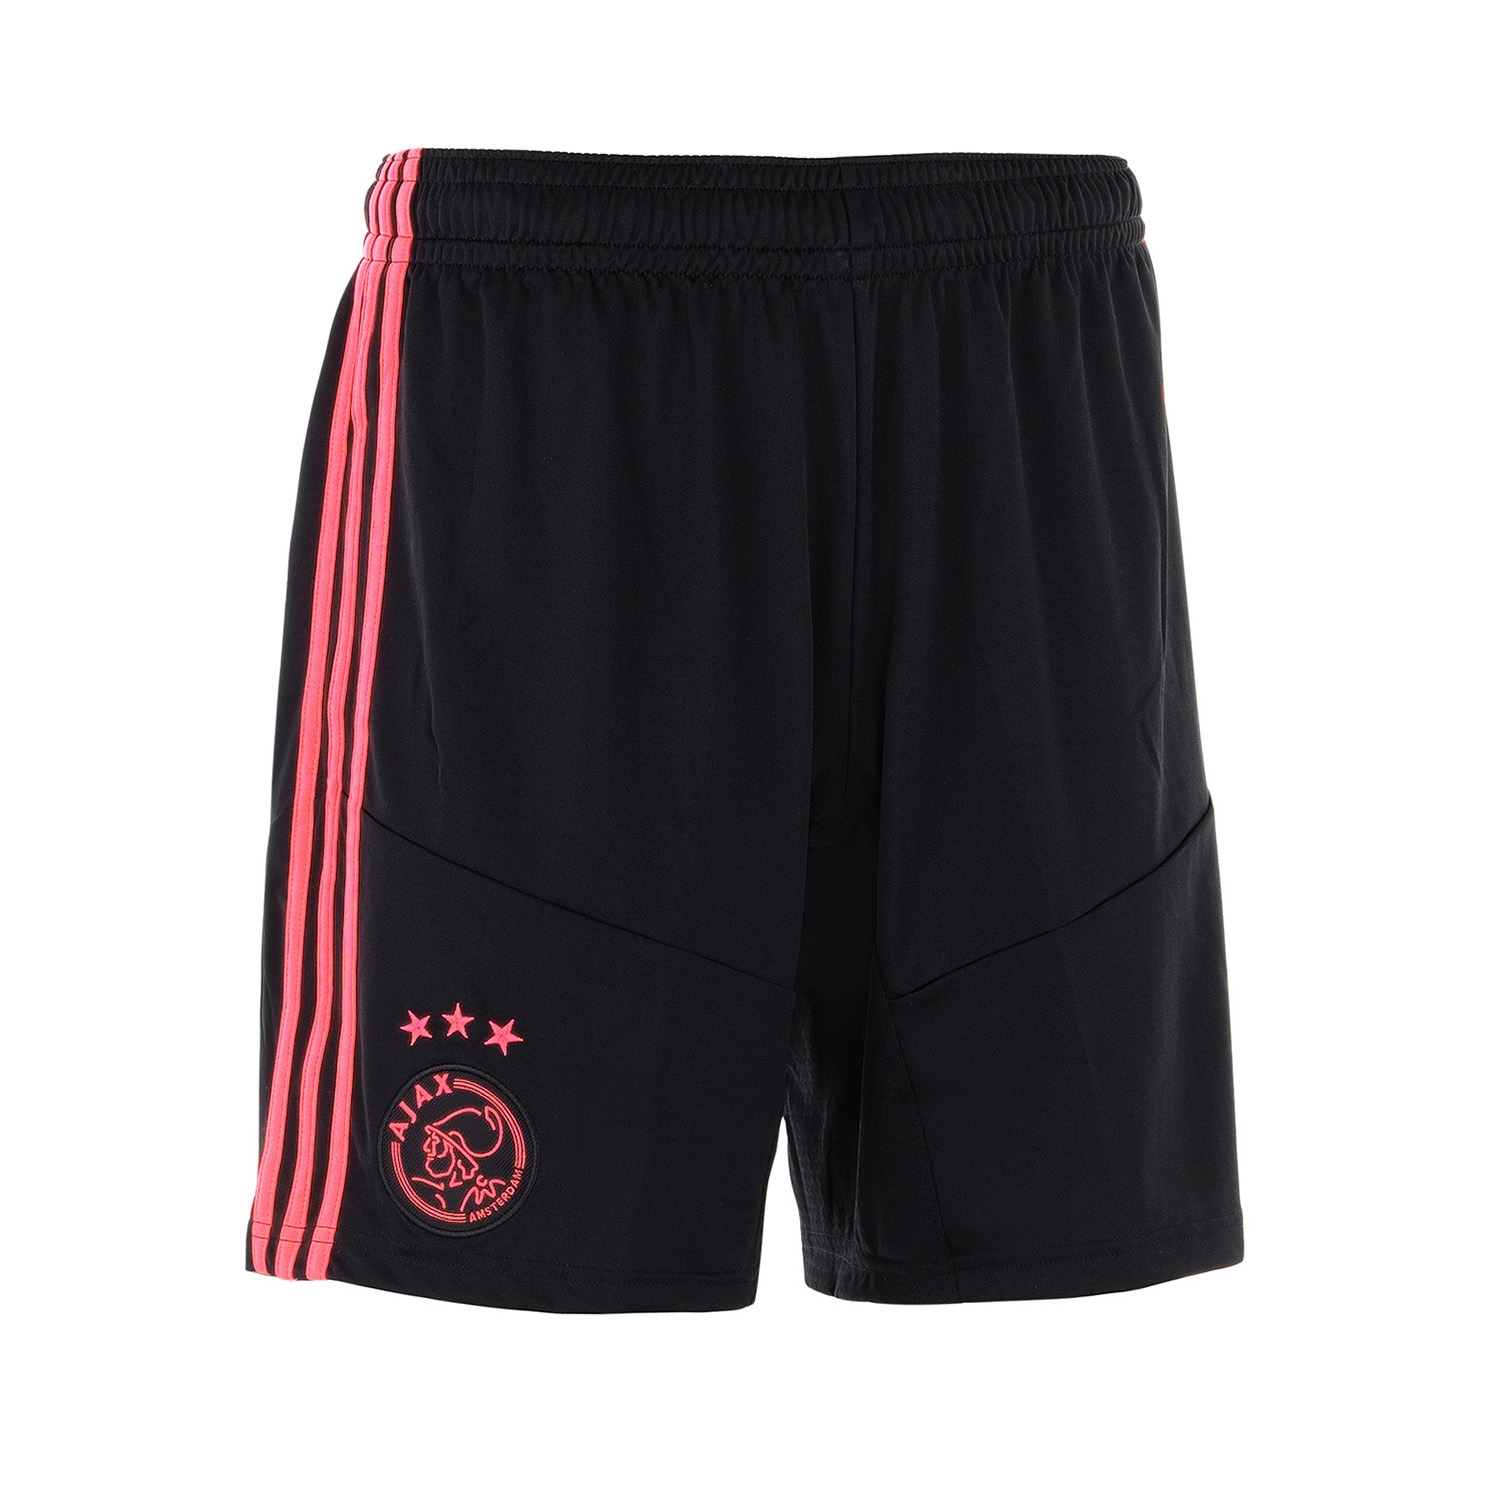 Ajax short uit 2013/2014